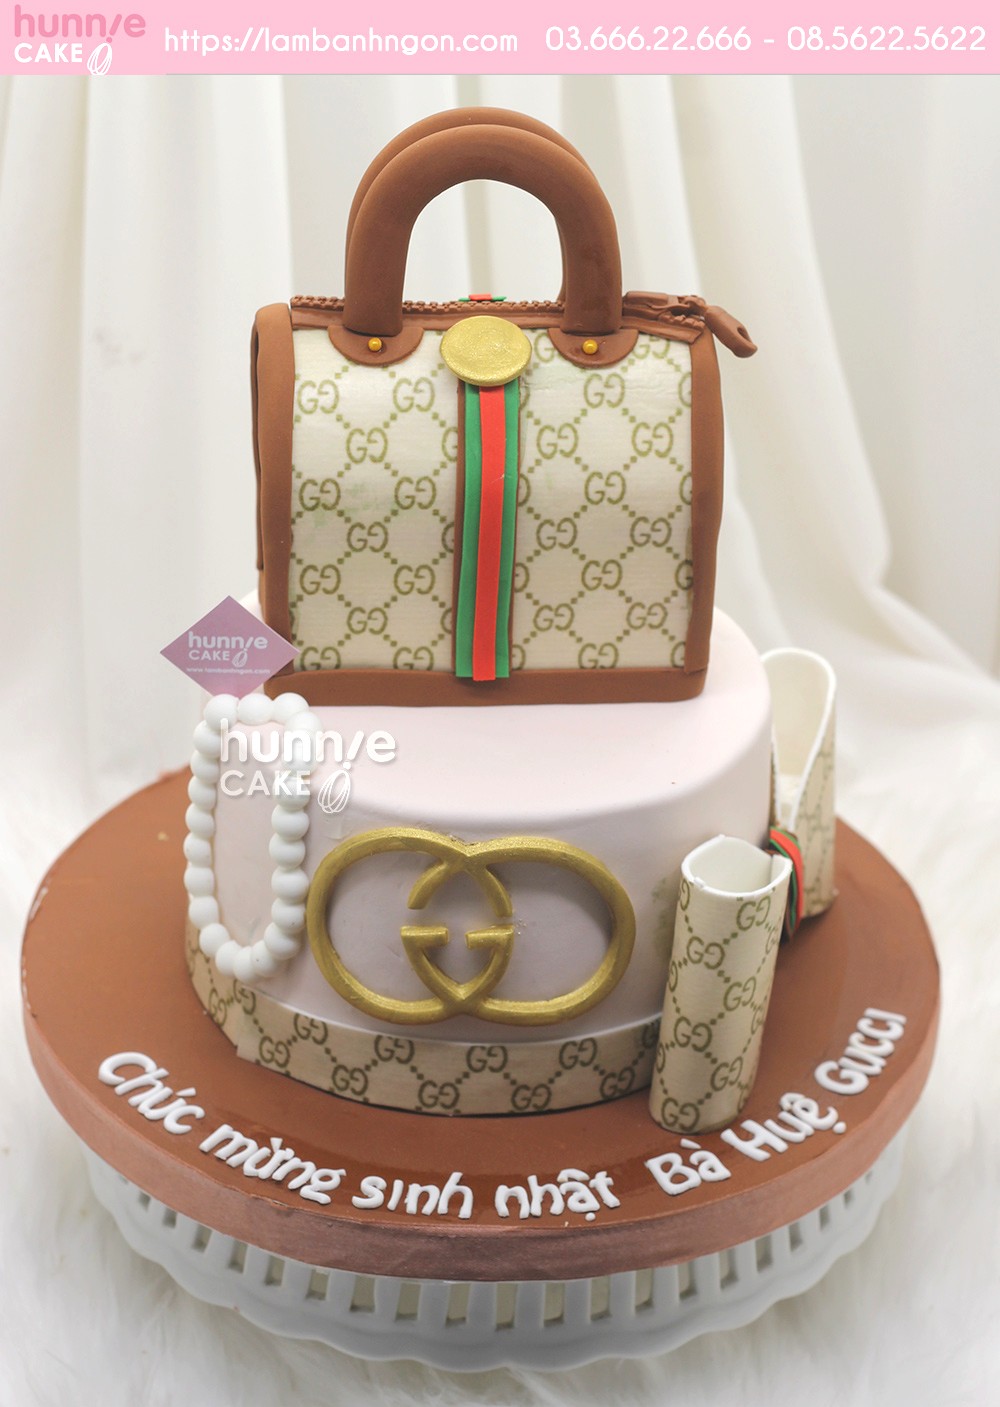 Bánh sinh nhật túi xách Gucci đẹp sành điệu tặng bạn yêu hàng hiệu8721 - Bánh ngon đẹp